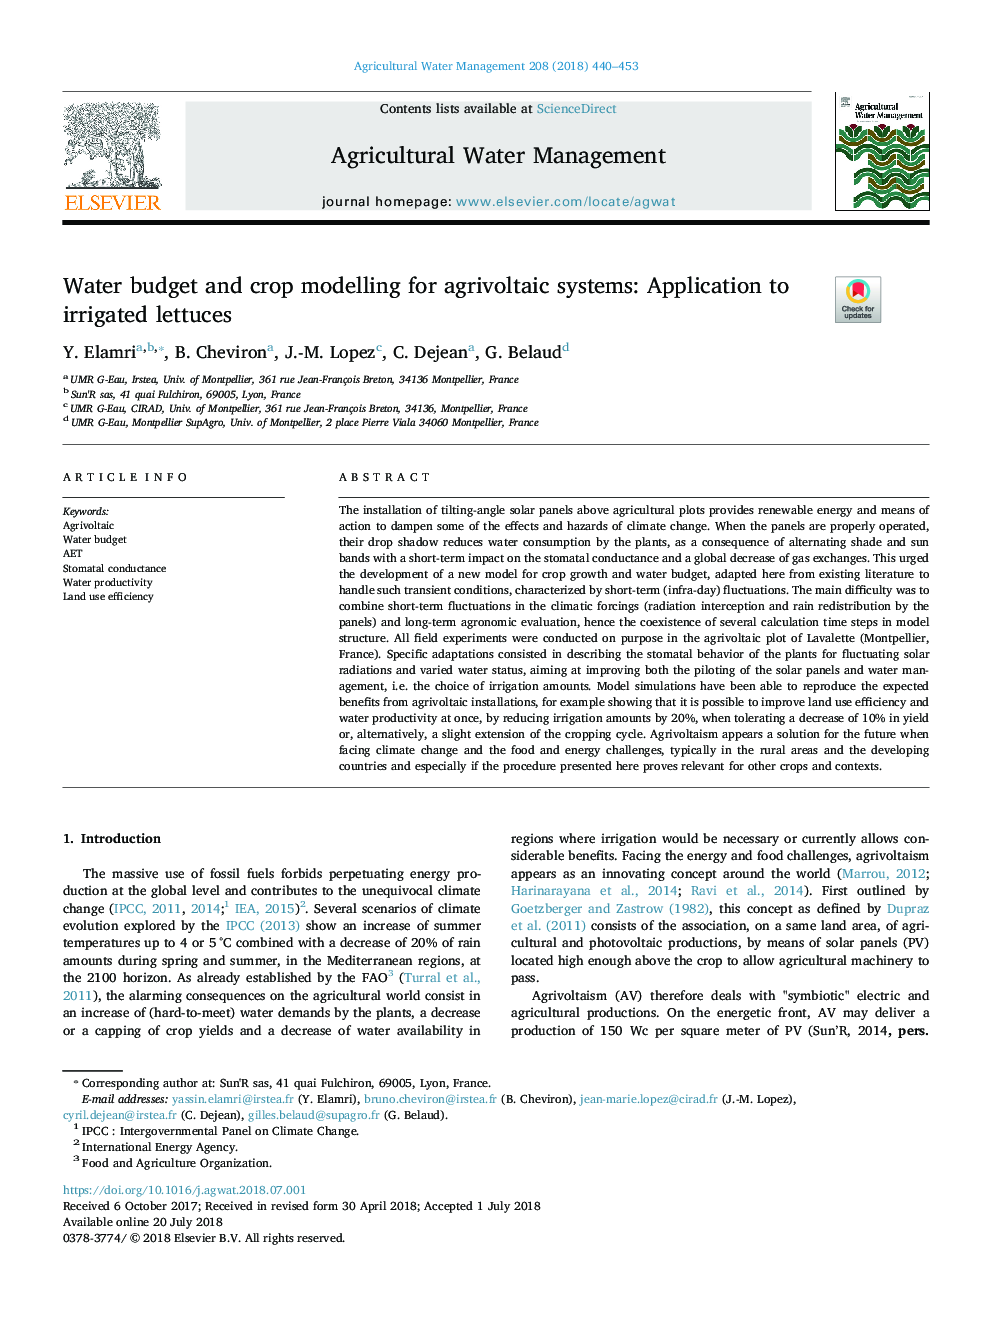 بودجه آب و مدل سازی محصولات کشاورزی برای سیستم های کشاورزی: ​​کاربرد در زراعت آبیاری 